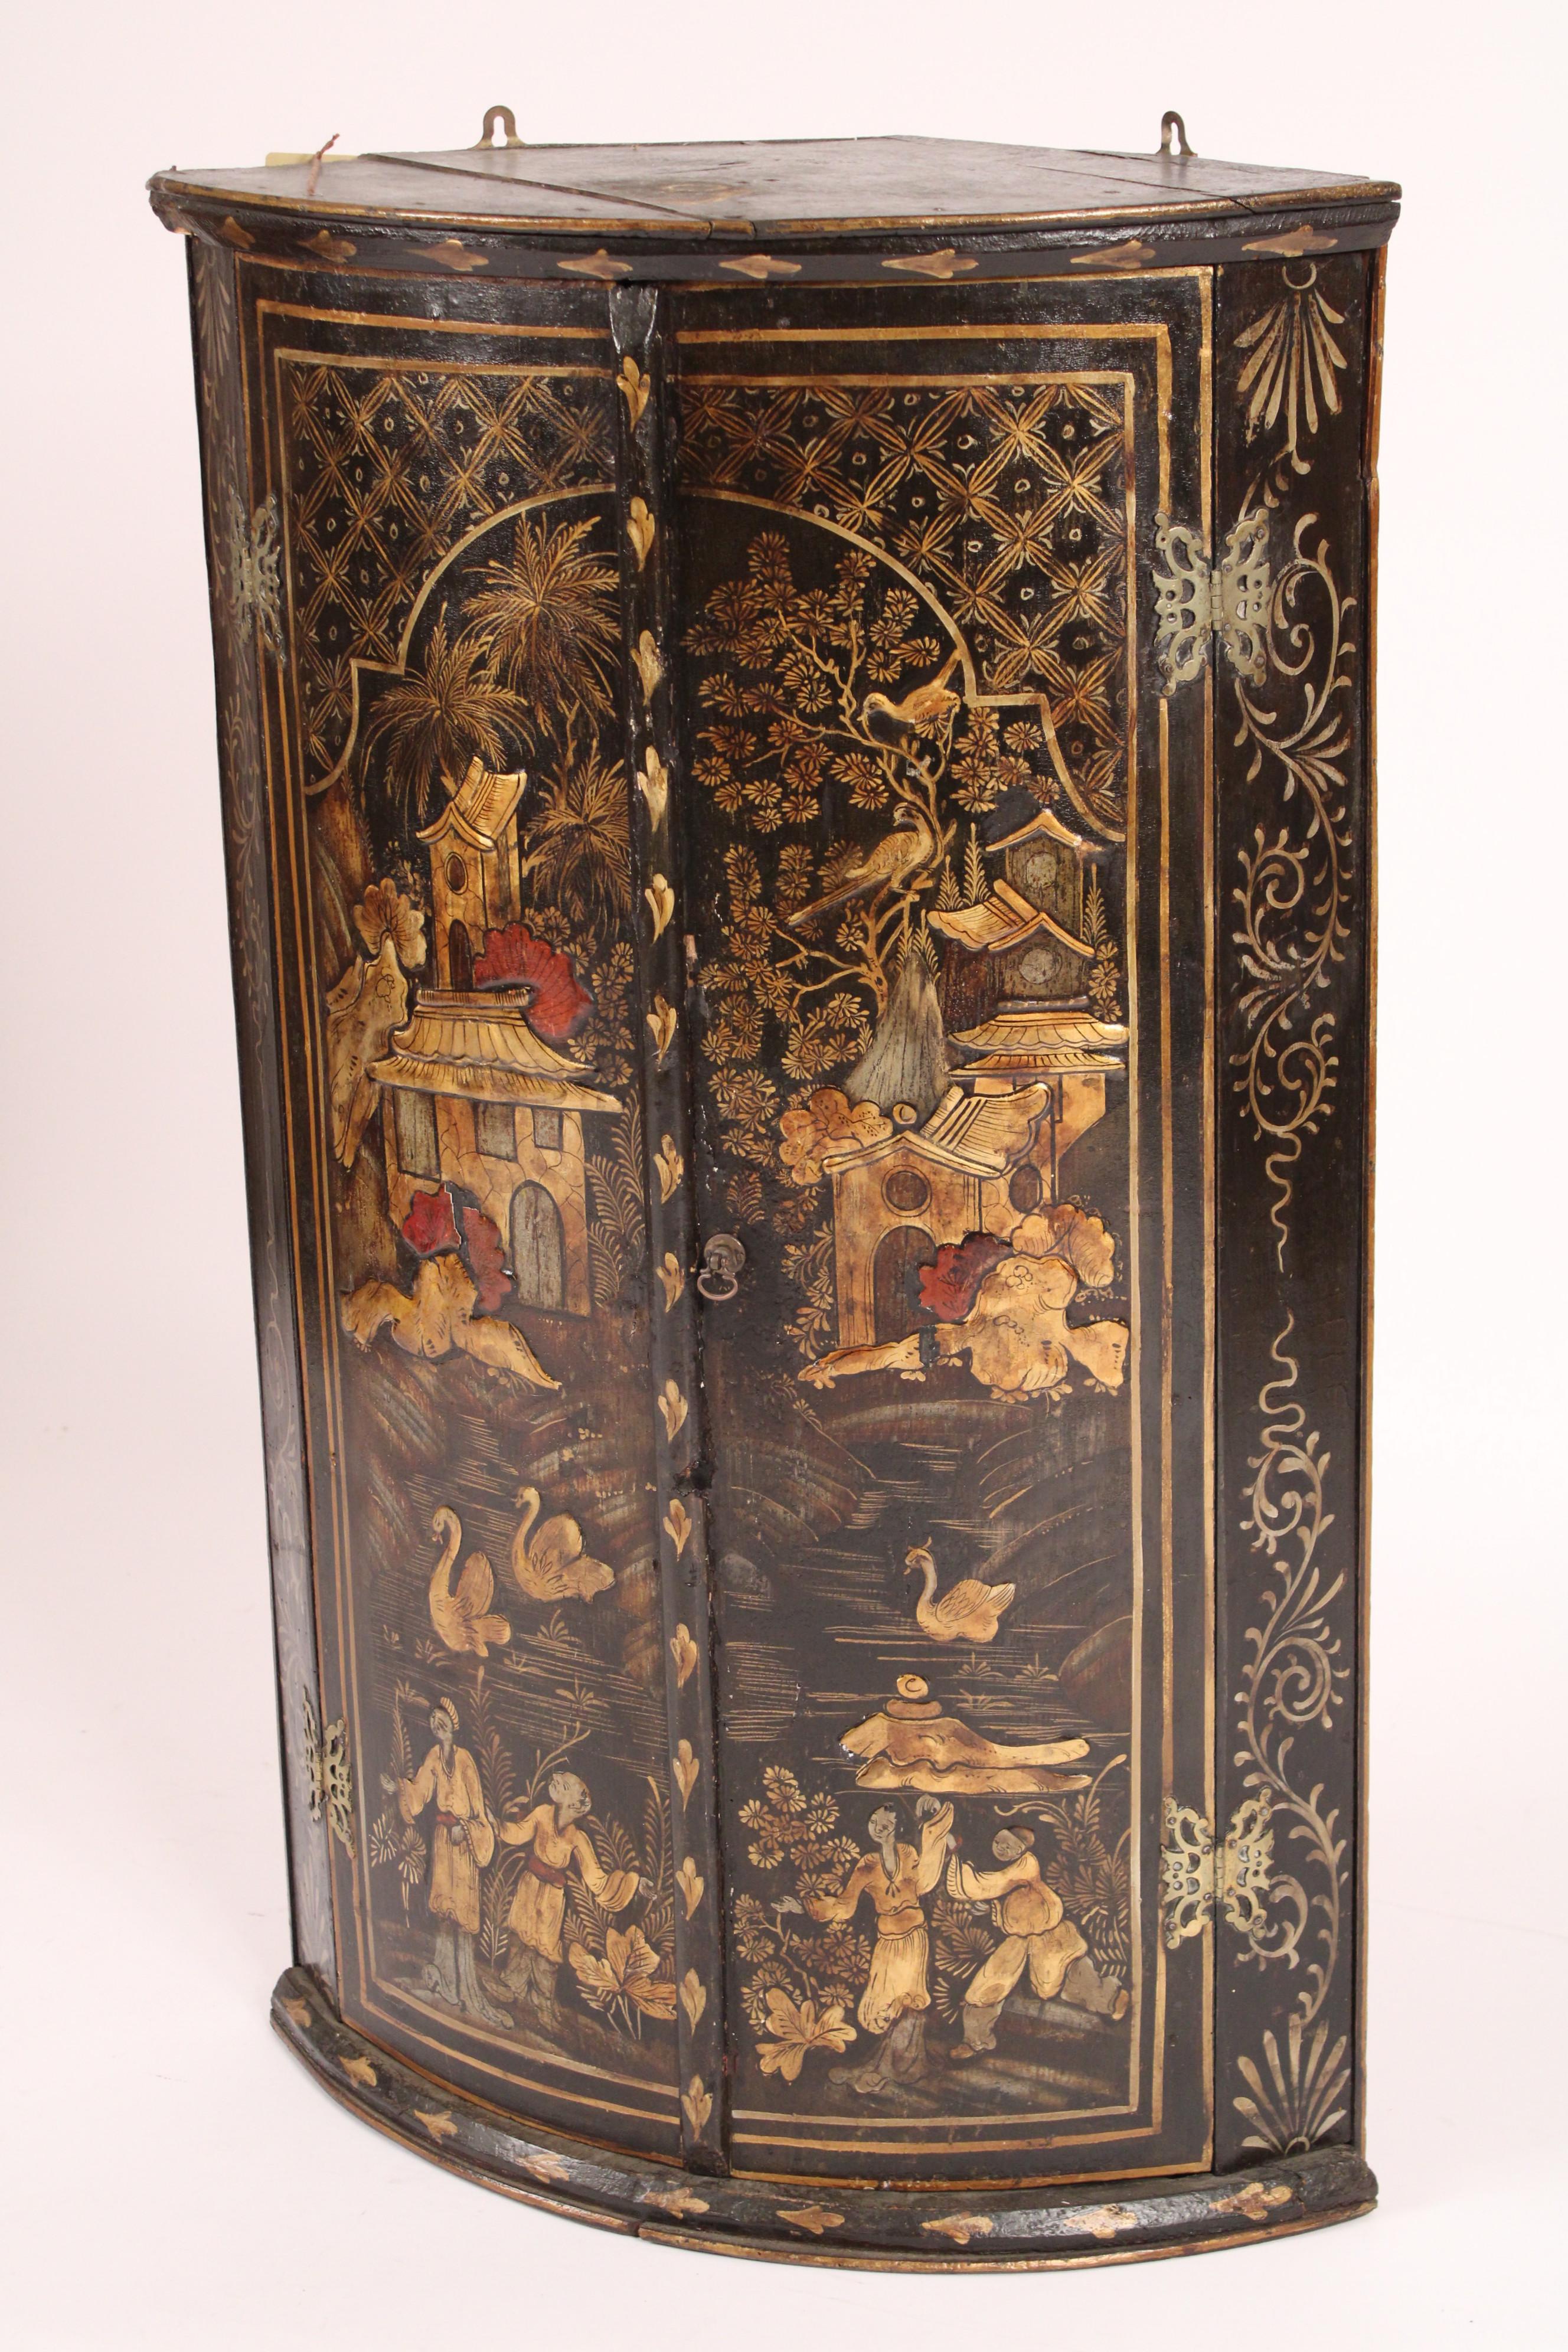 Chinoiserie verzierter Hänge-Eckschrank George III., spätes 18. Die beiden Türen sind mit chinesischen Figuren, Teehäusern, Schwänen und Vögeln verziert. Das Chinoiserie-Dekor ist erhaben, nicht flach.